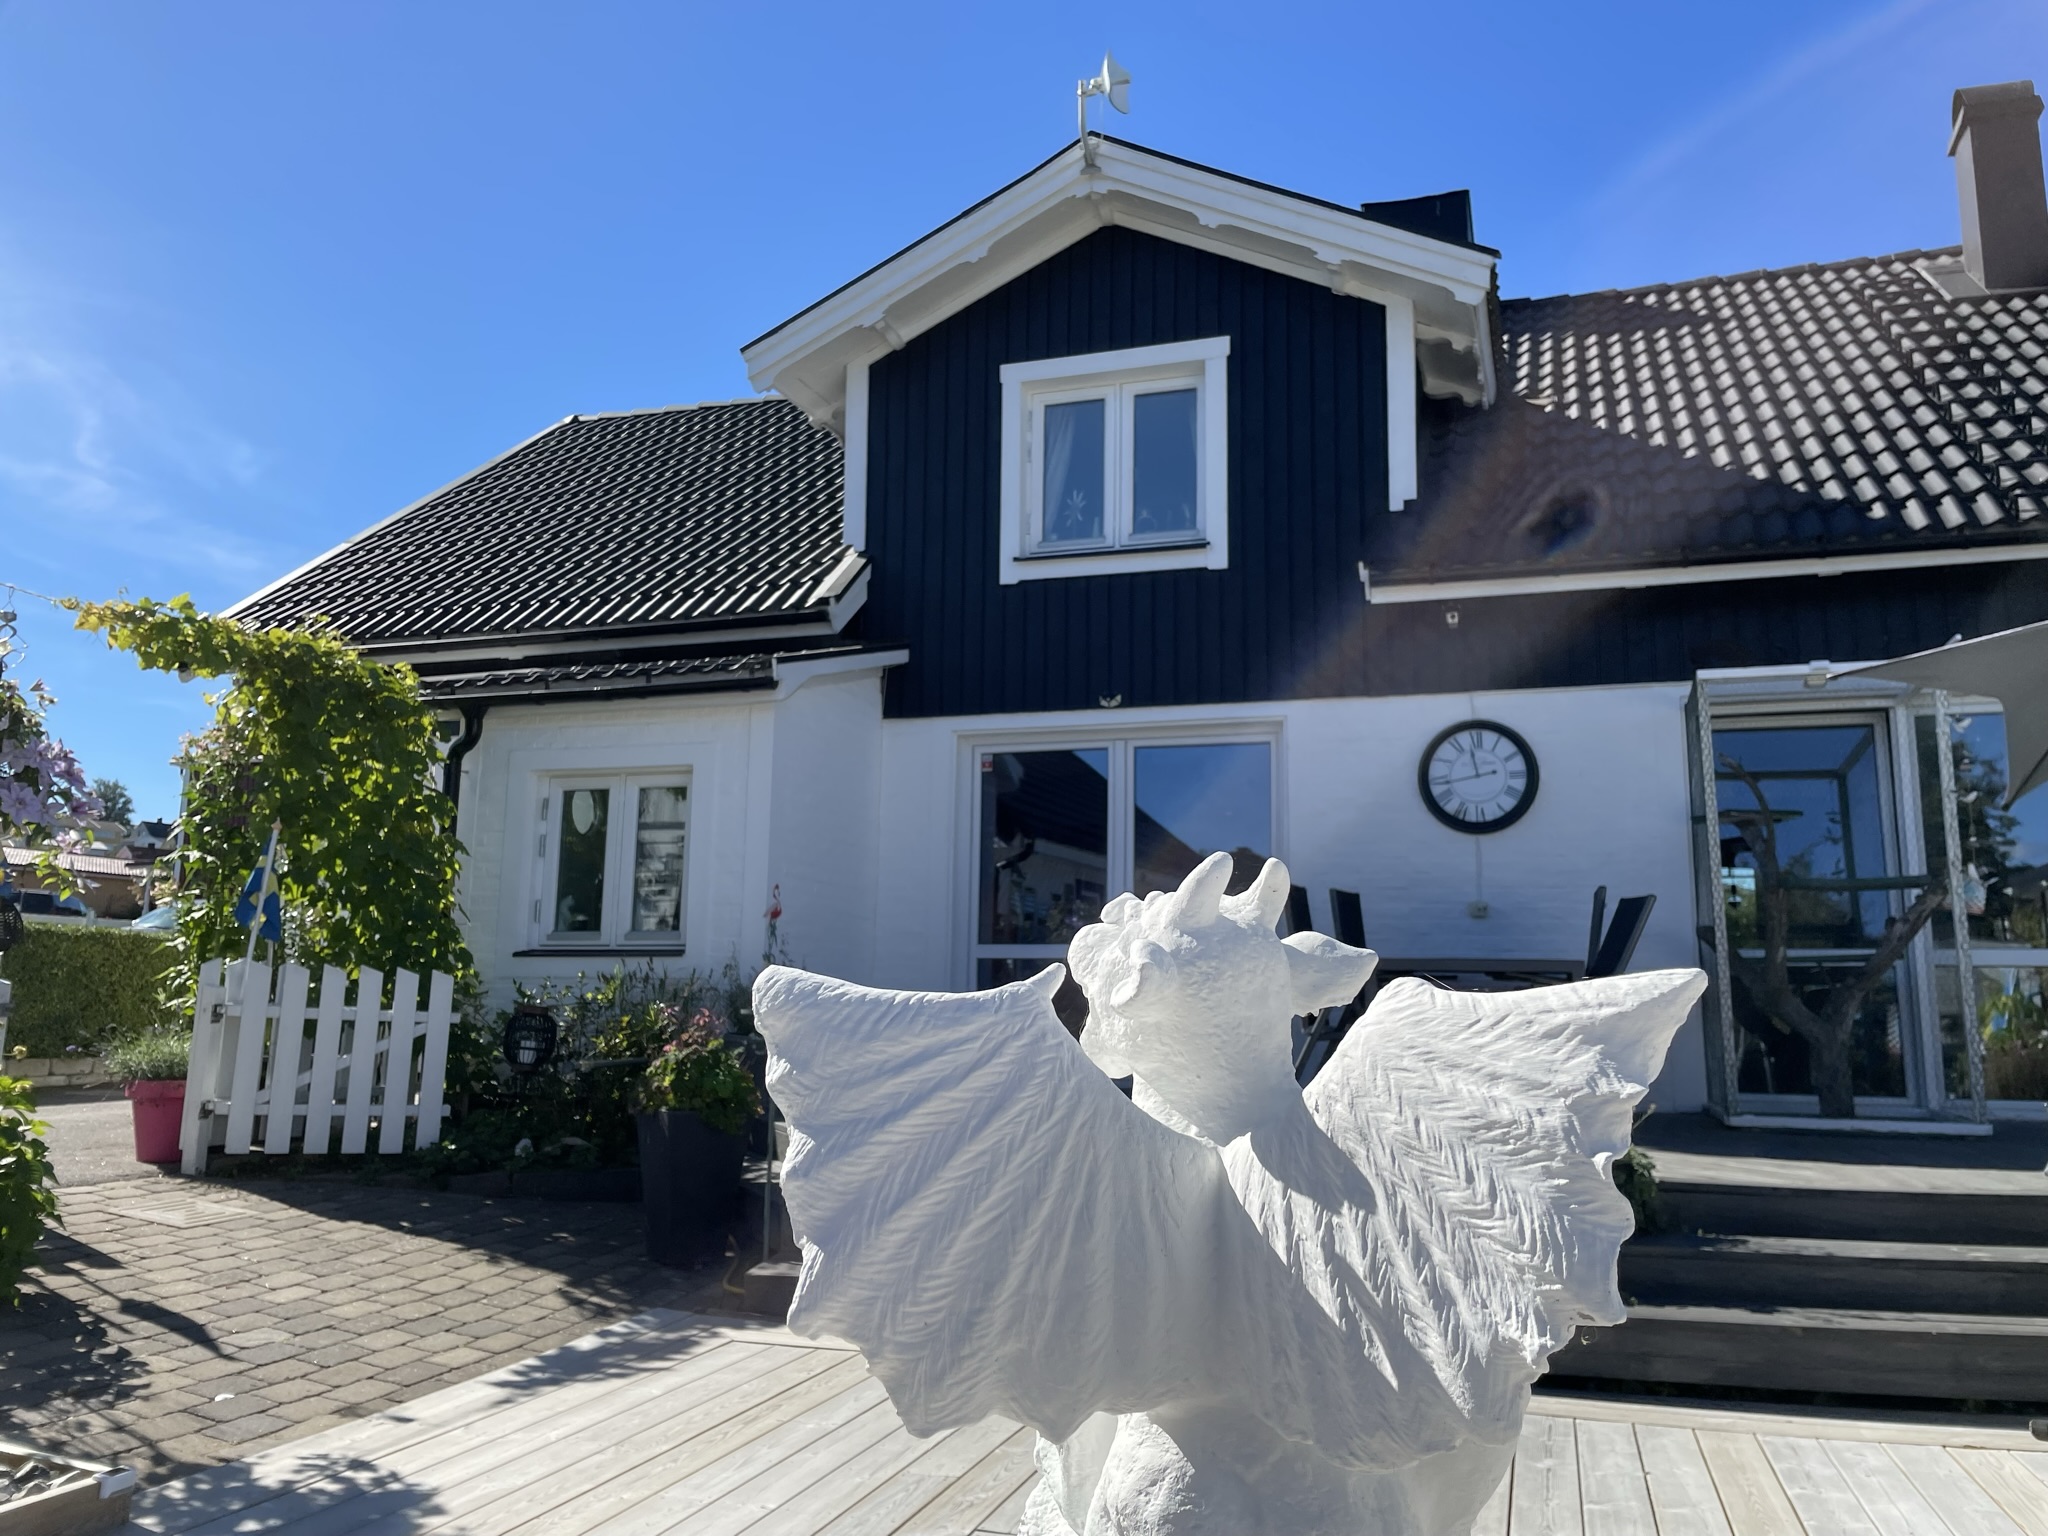 Vinnarhuset i tävlingen "Motalas häftigaste hem" 2022 tillhör Lord Mark Henriksson. I förgrundens av huset ses en vit staty av en bevingad fantastivarelse.